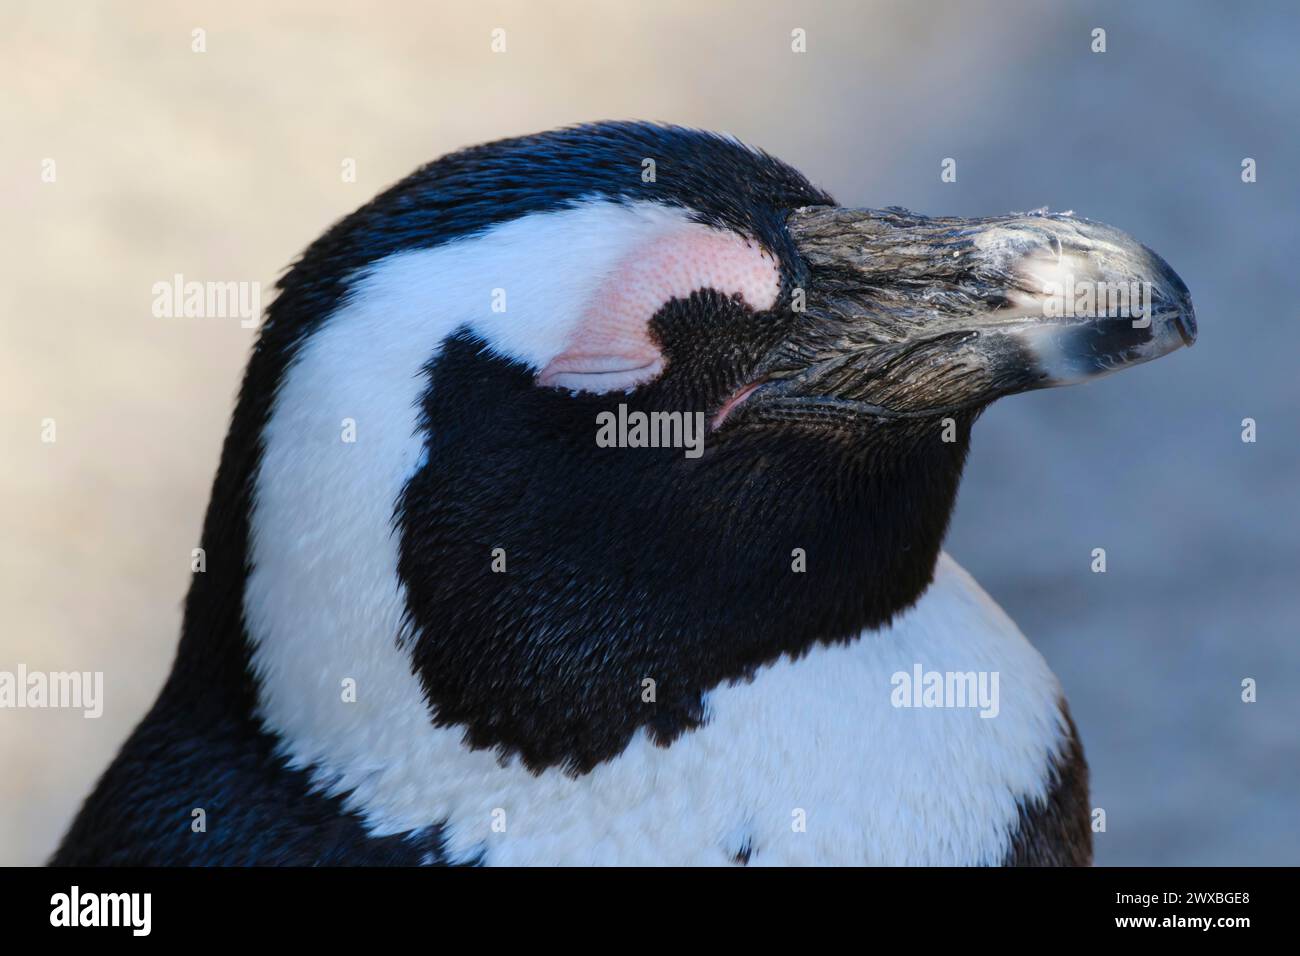 Pinguino africano (Spheniscus demersus) a occhio chiuso, ritratto, occorrenza Sud Africa, prigioniero, Renania settentrionale-Vestfalia, Germania Foto Stock